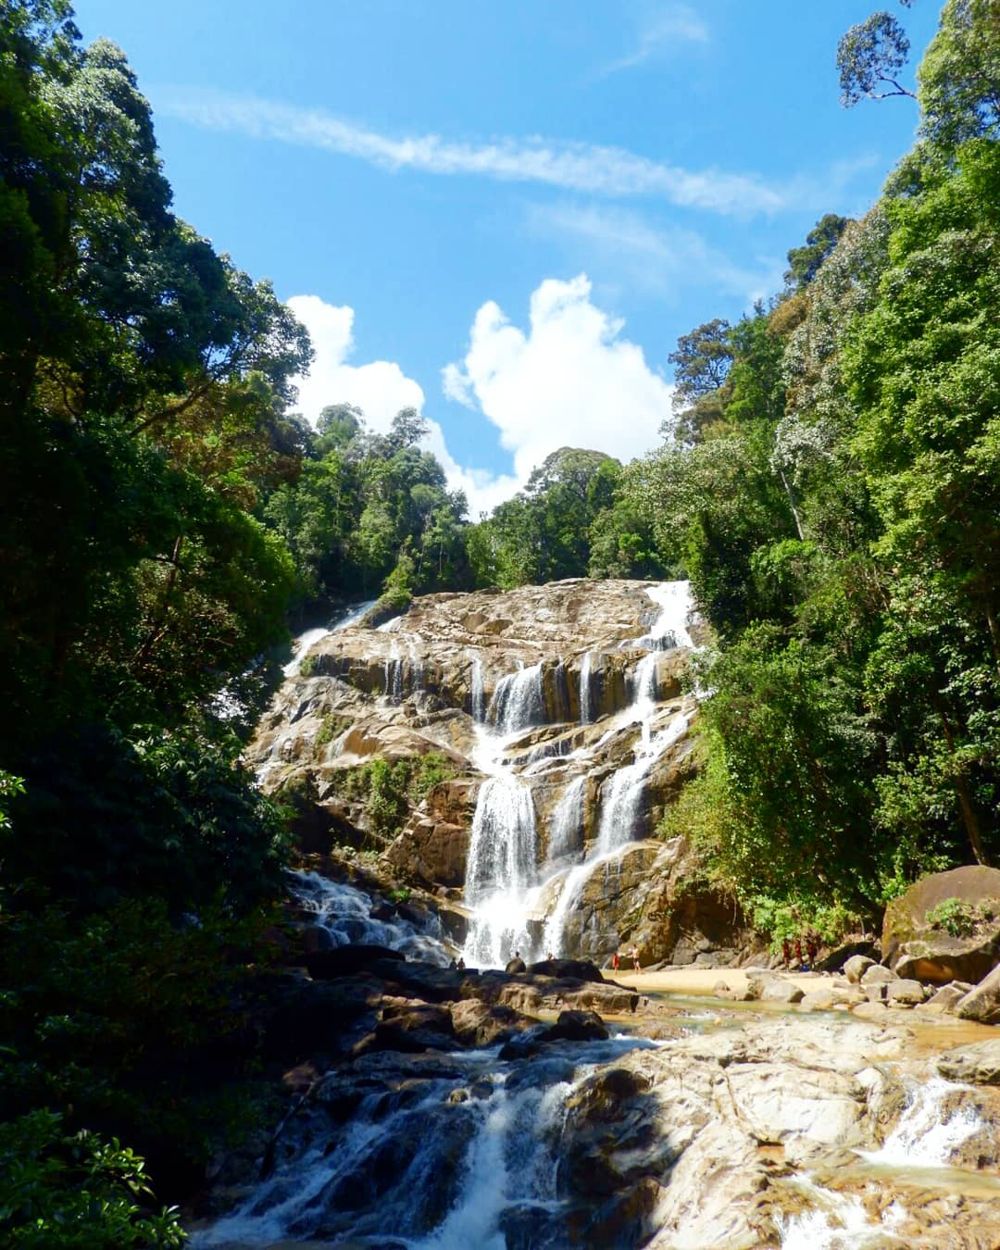 sungai pandan waterfall